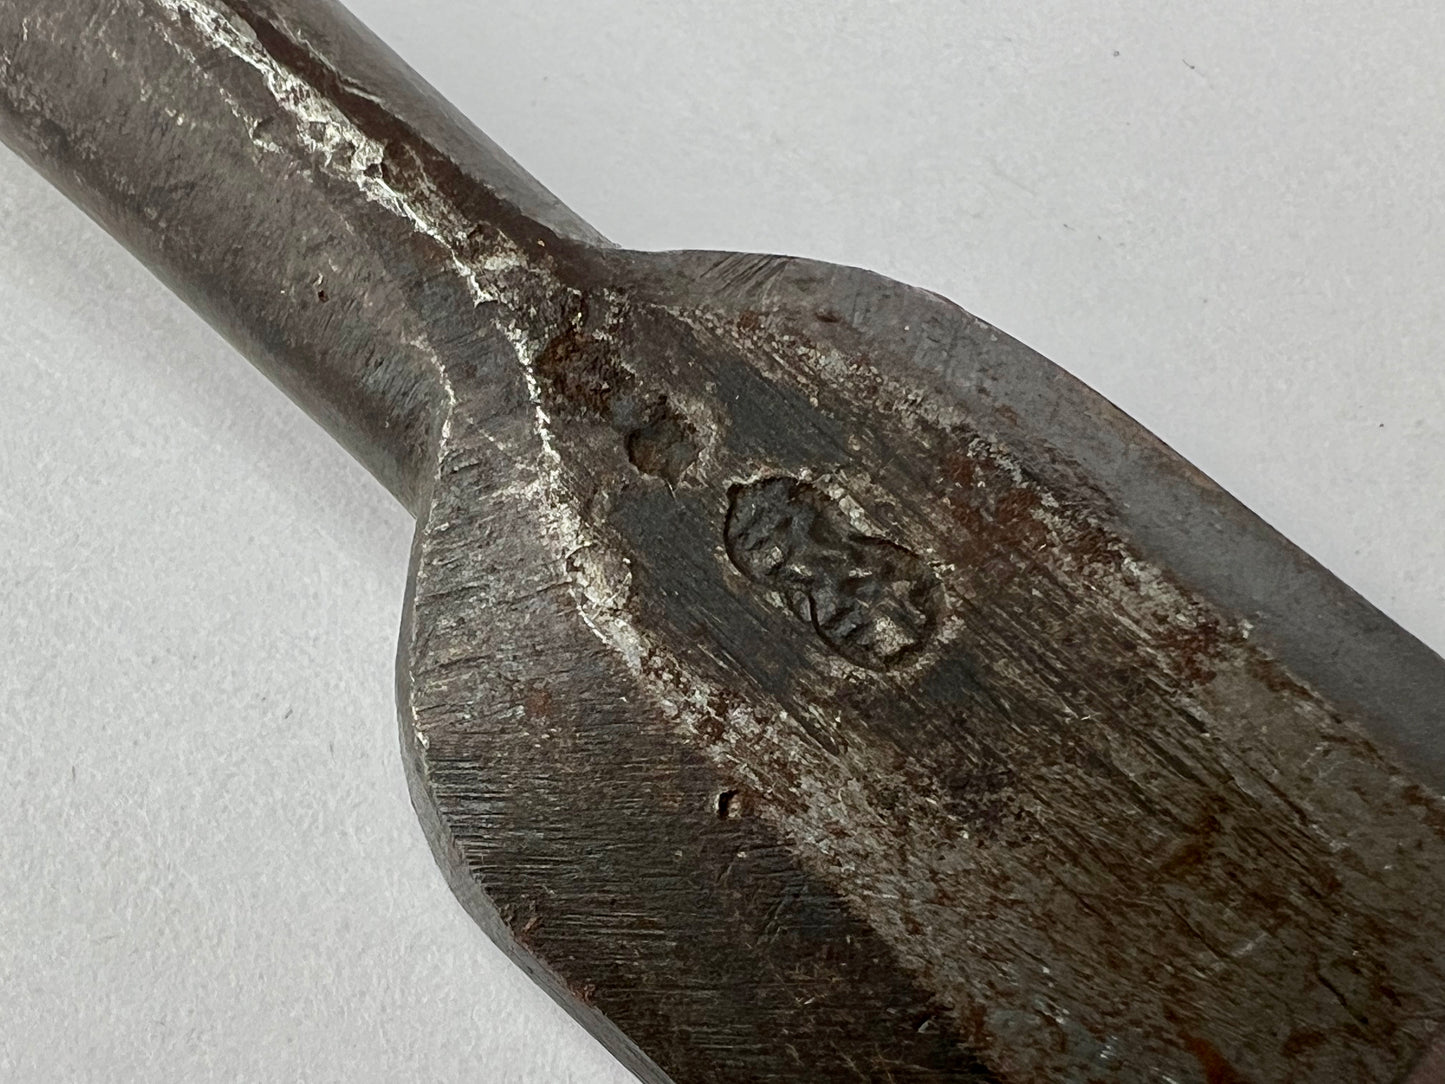 Vintage Japanese Signed Nomi Chisel 7/8" (23mm) Forged Iron Blade & Macassar Ebony Handle